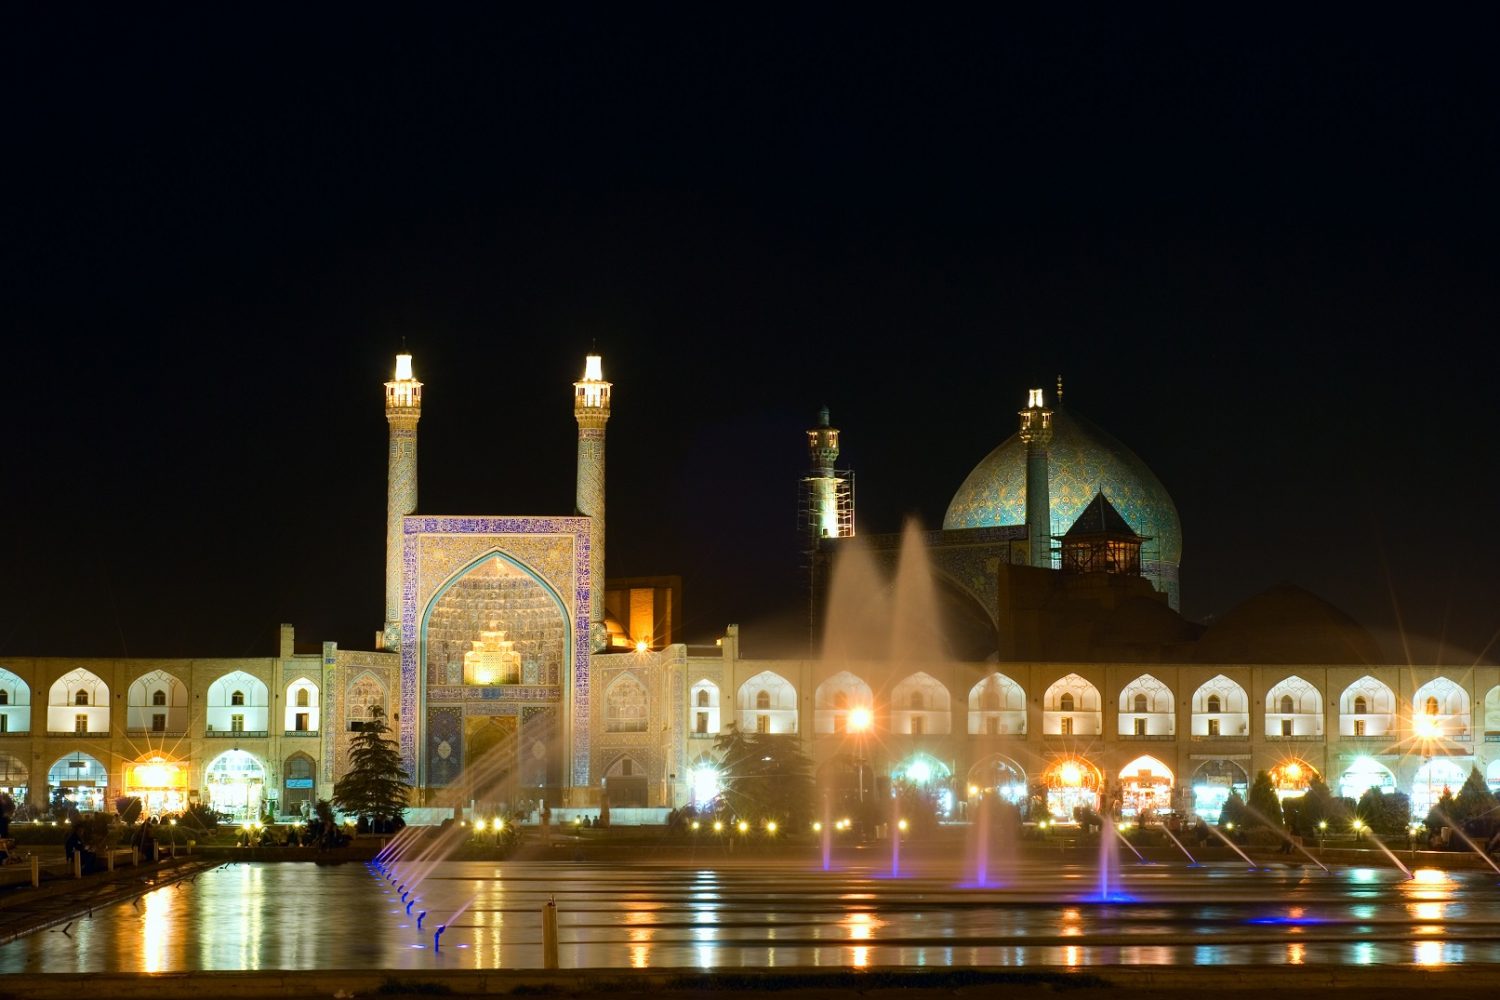 Naqshe Jahan Sq Shah Mosque Isfahan Iran